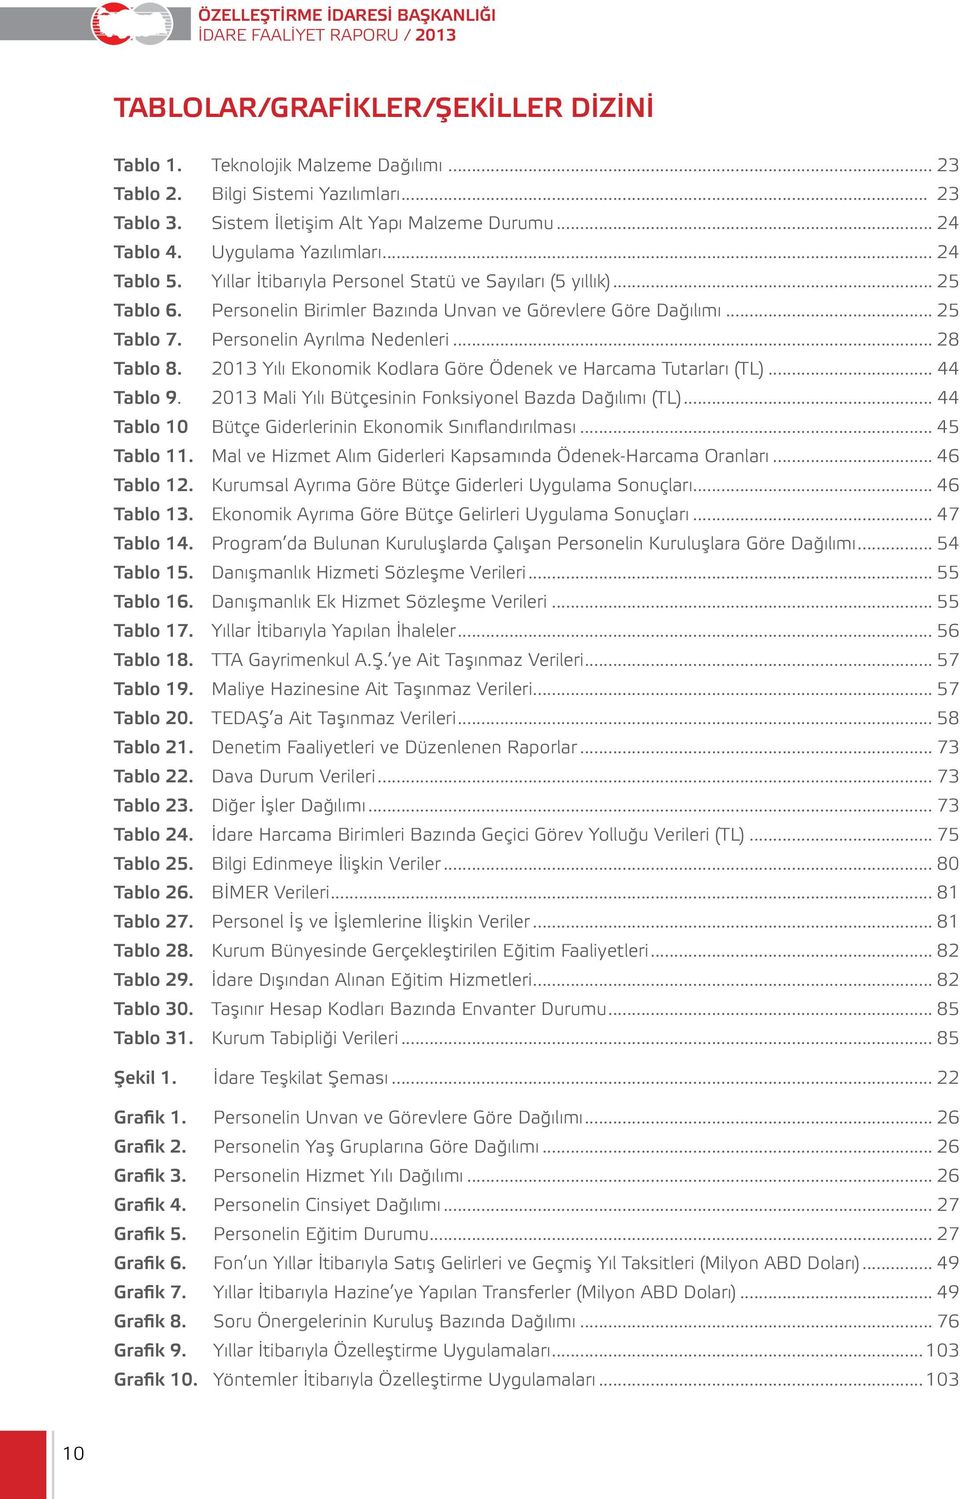 Personelin Ayrılma Nedenleri... 28 Tablo 8. 2013 Yılı Ekonomik Kodlara Göre Ödenek ve Harcama Tutarları (TL)... 44 Tablo 9. 2013 Mali Yılı Bütçesinin Fonksiyonel Bazda Dağılımı (TL).